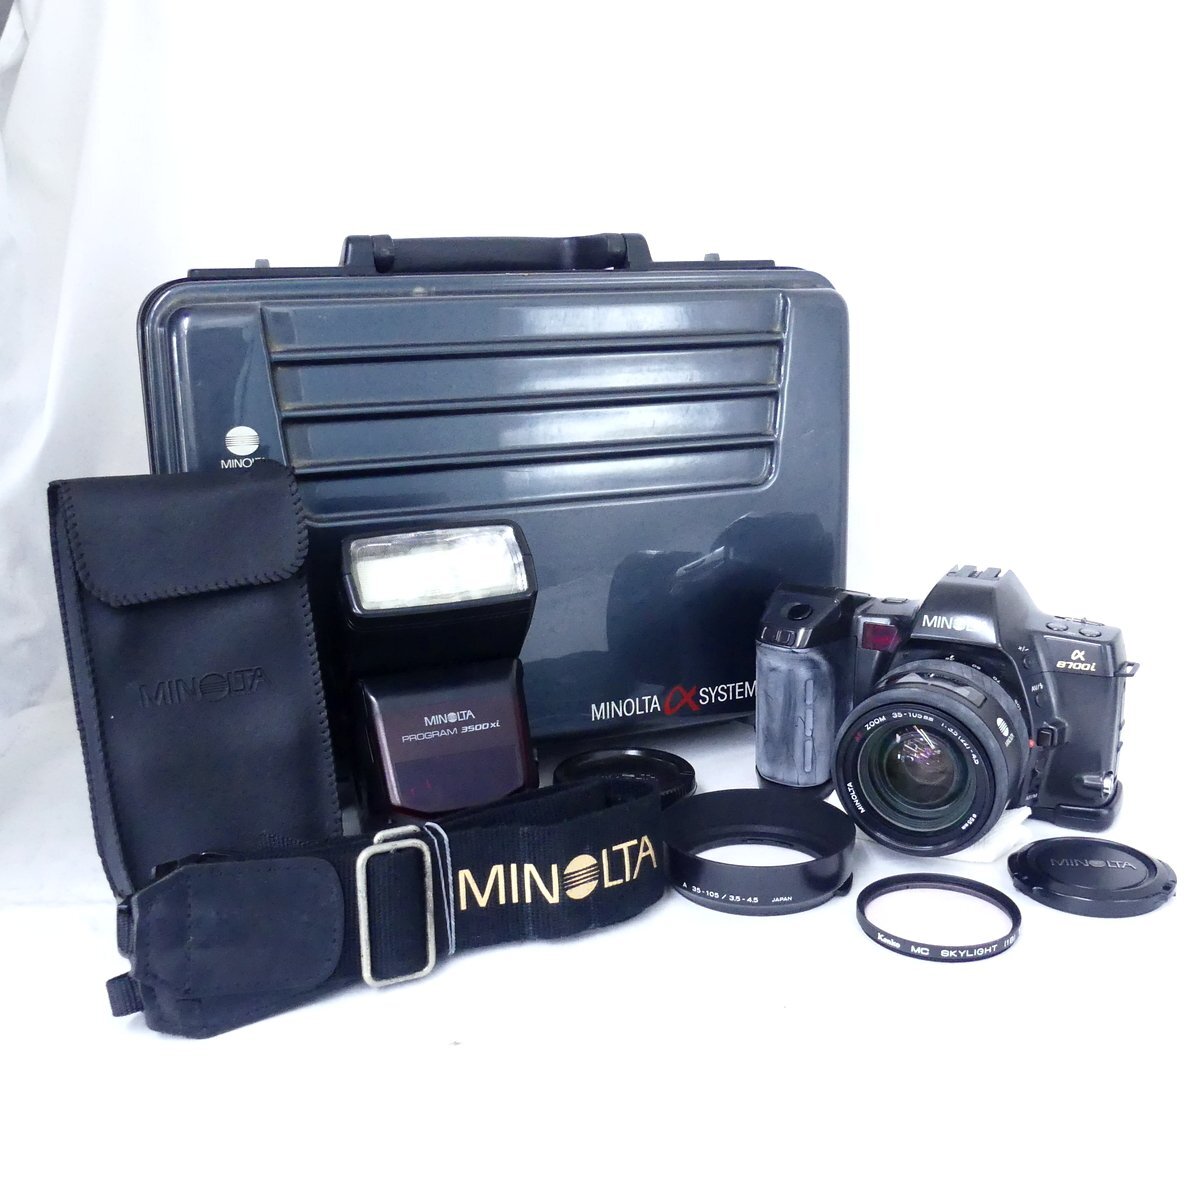 MINOLTA ミノルタ α 8700i + AF ZOOM 35-105mm F3.5-4.5 フィルムカメラ、3500xi ストロボ 現状品 USED /2405Cの画像1